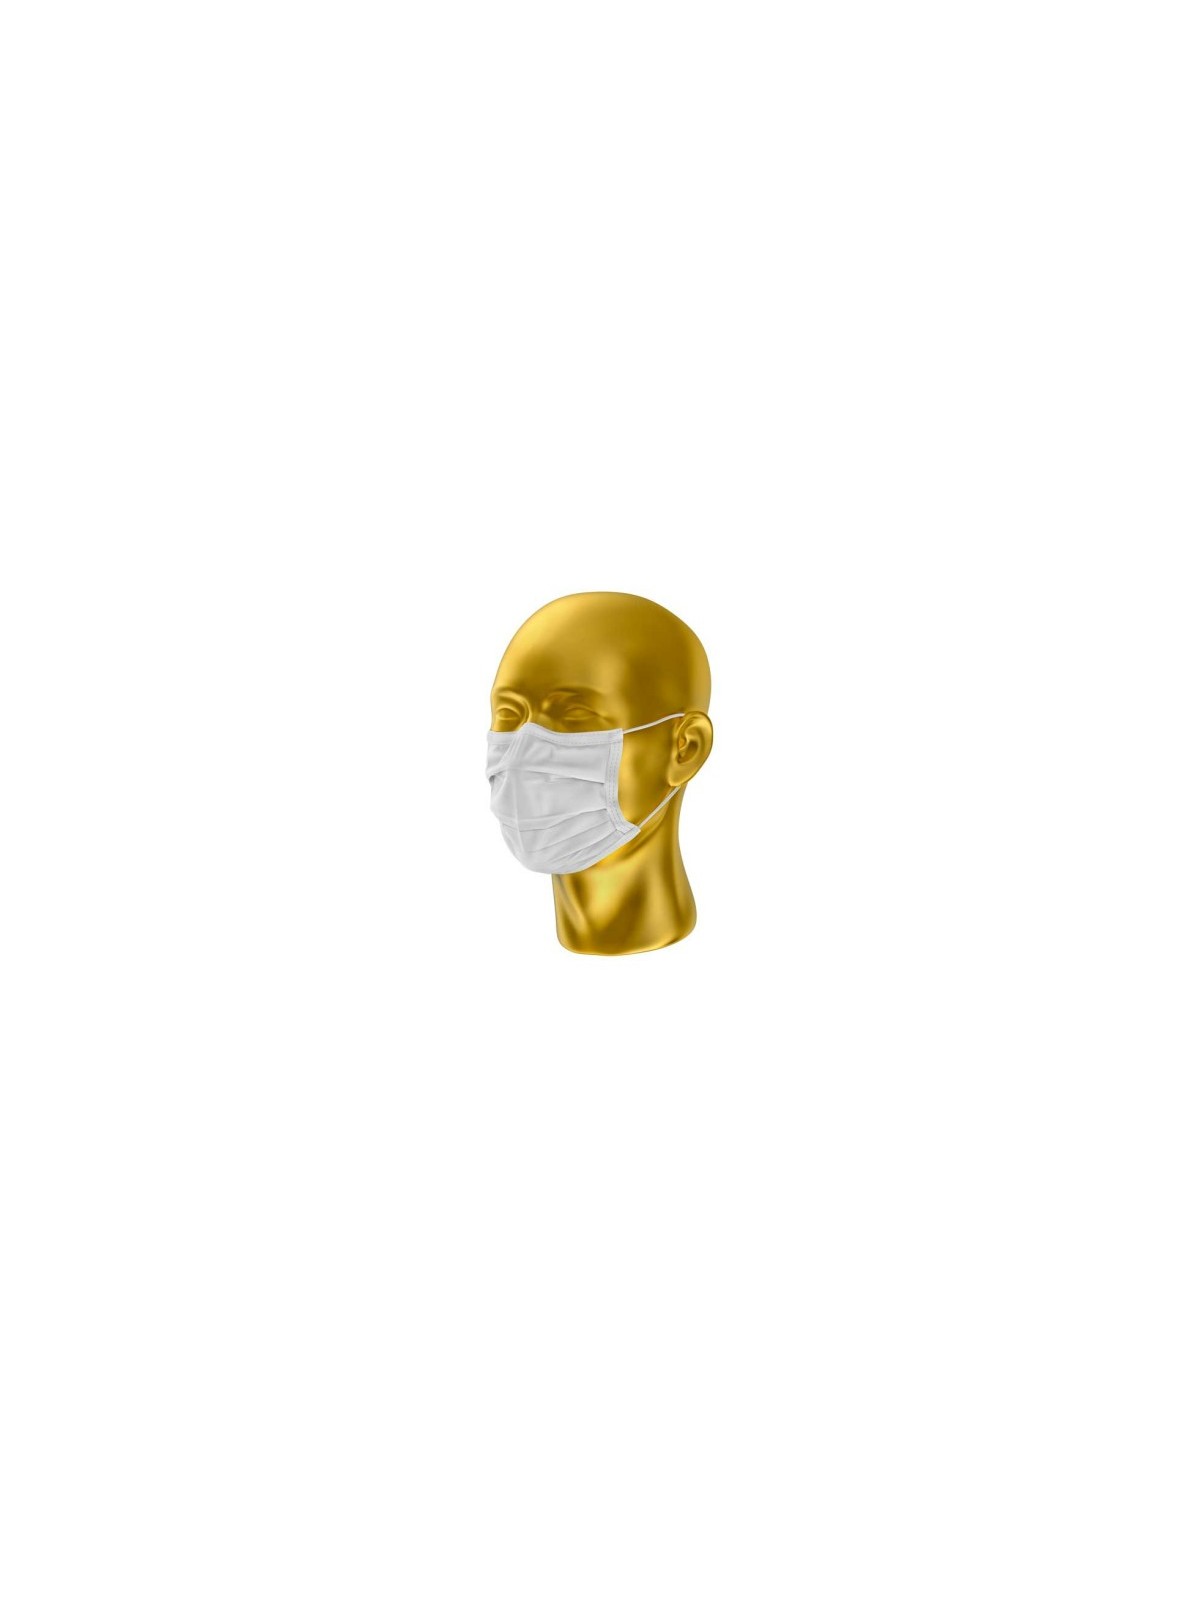 08-010 Masque de protection alternatif en polyester personnalisé